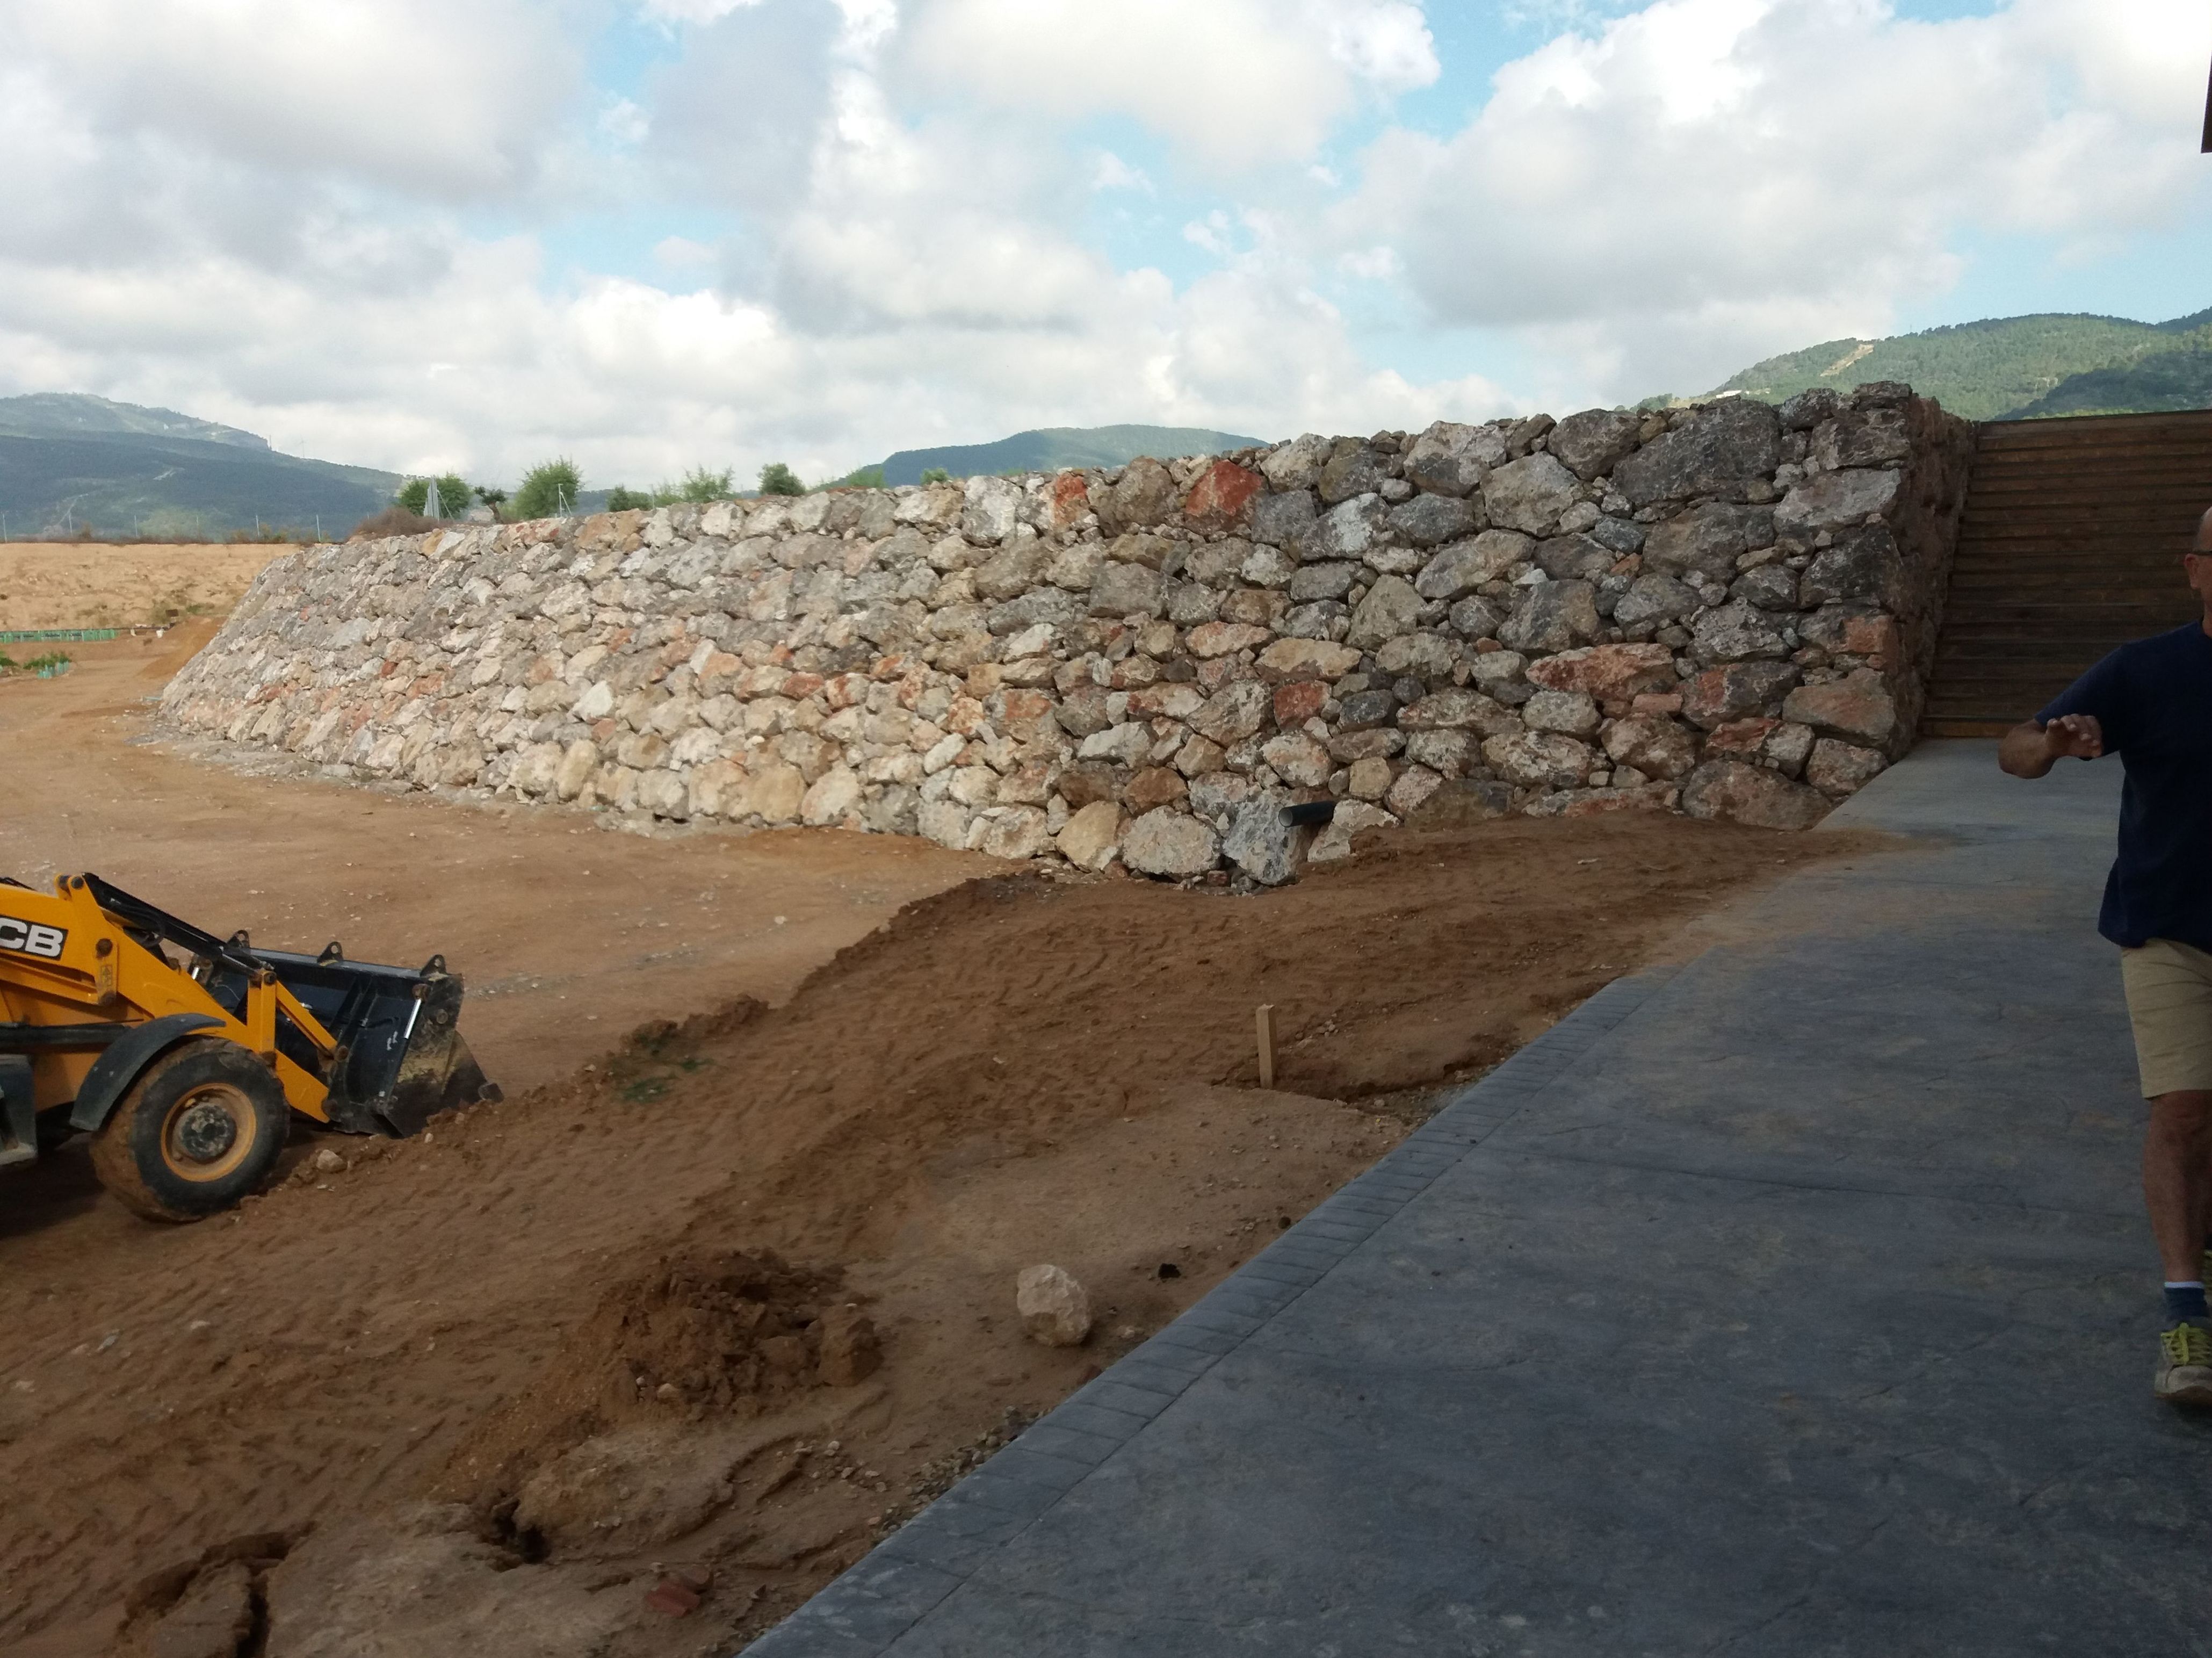 Foto 3 de Excavaciones en Fontanares | Excavaciones Calabuig, S. L.